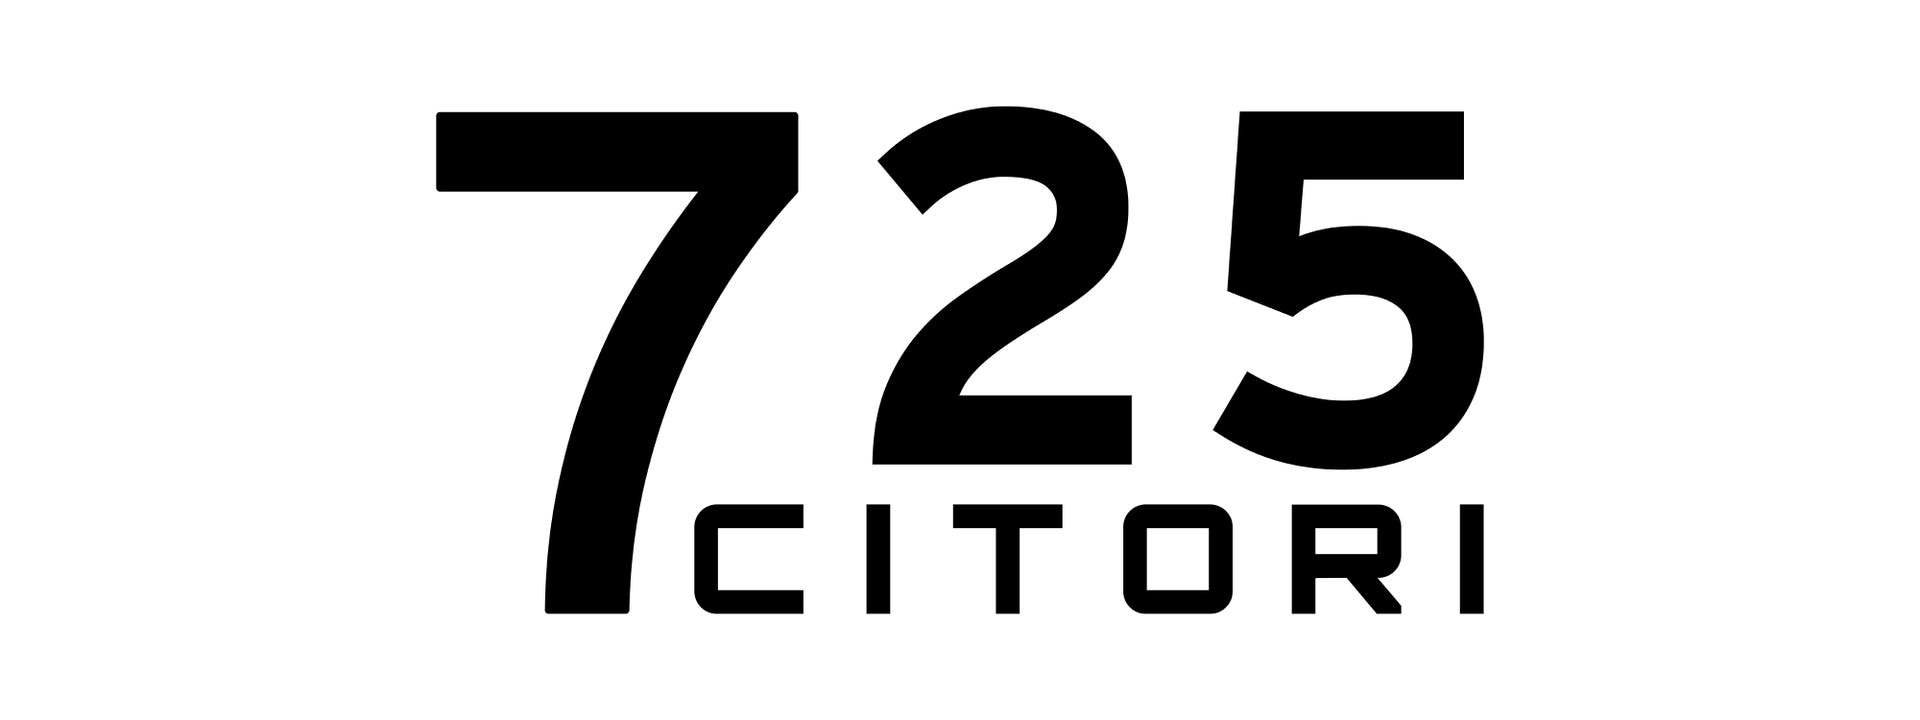 Citori 725 Logo